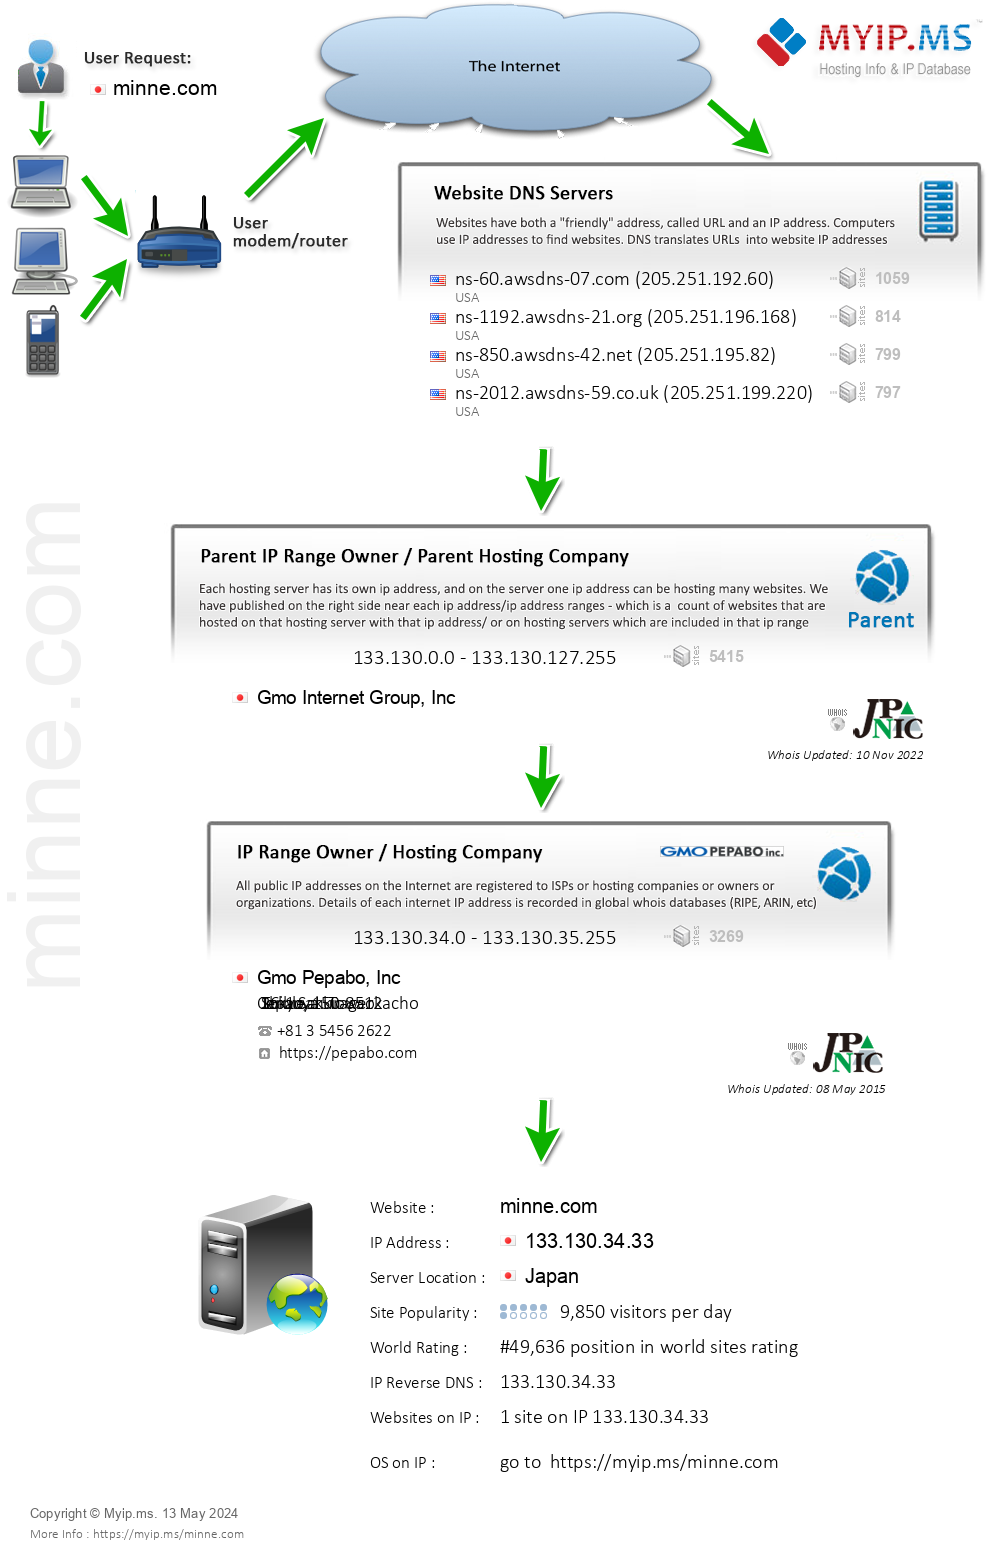 Minne.com - Website Hosting Visual IP Diagram